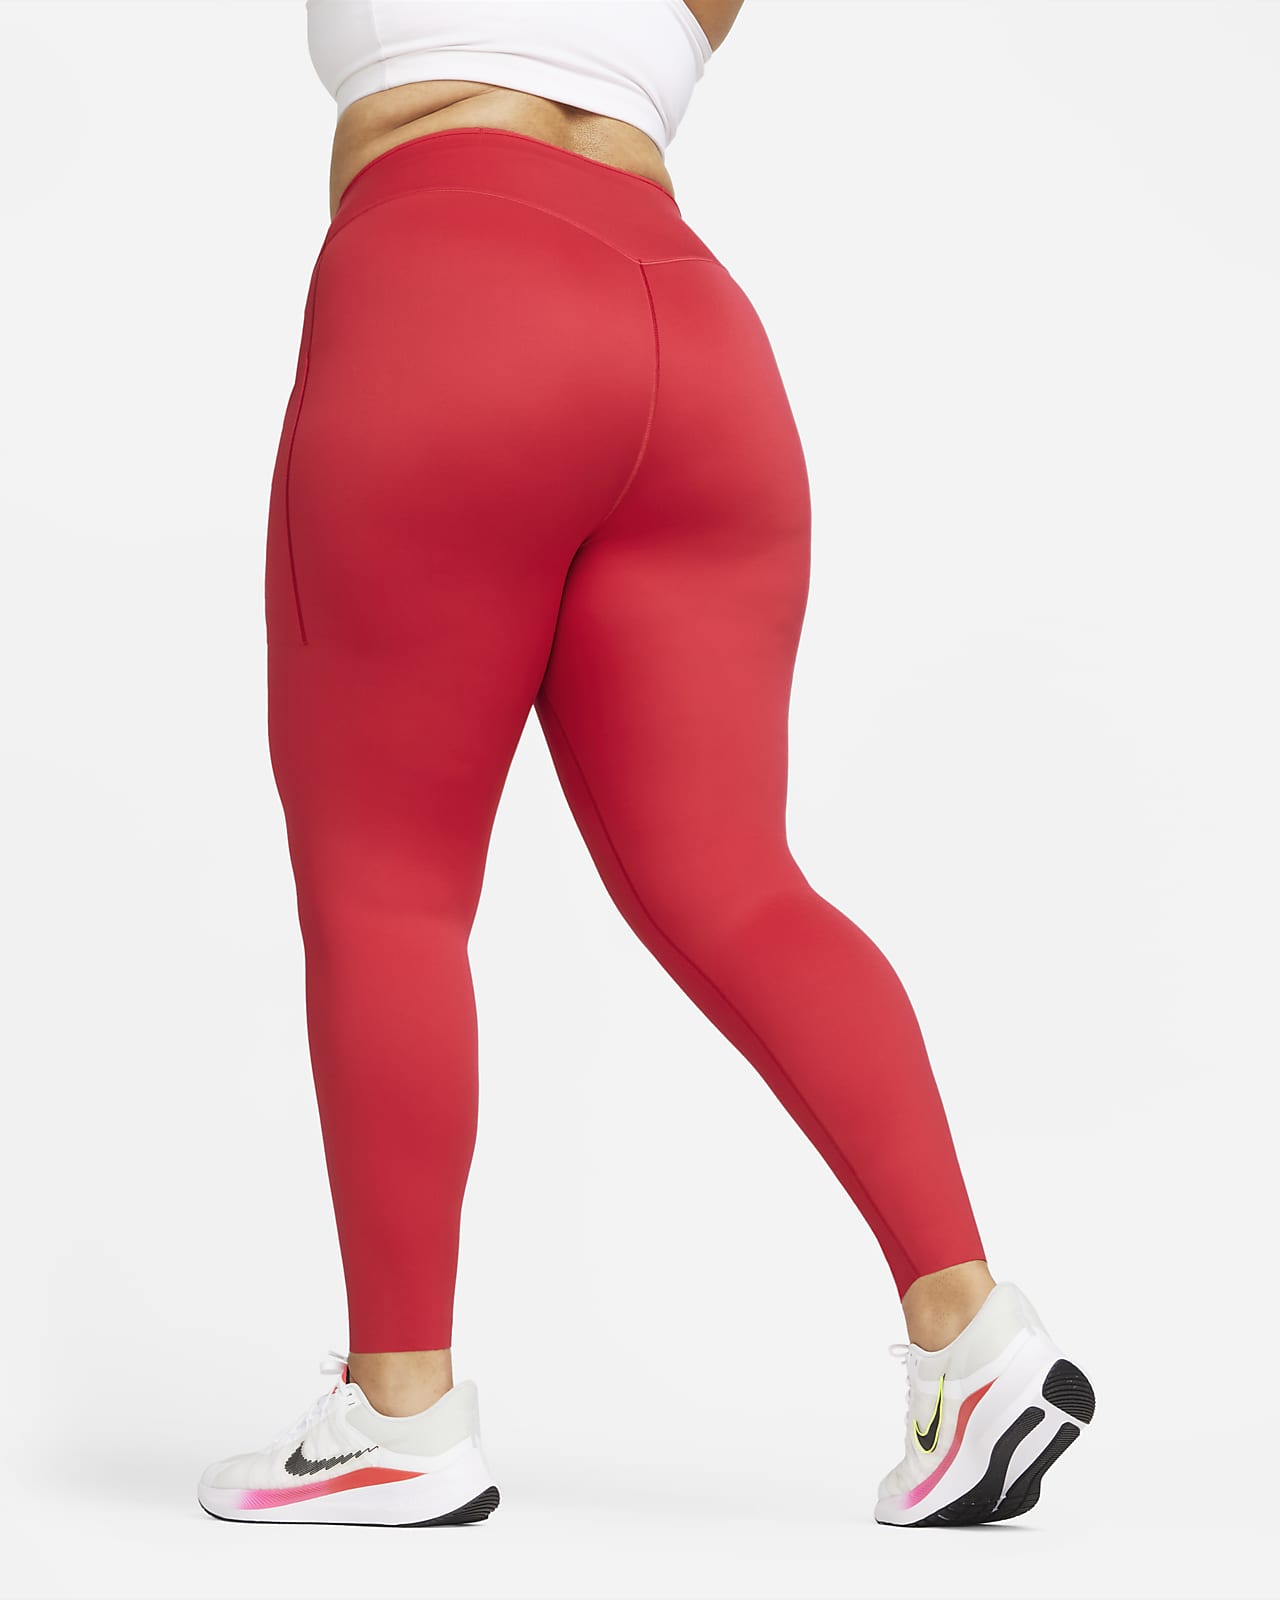 Leggings de completo y tiro alto con sujeción firme y para mujer Go (talla grande). Nike.com